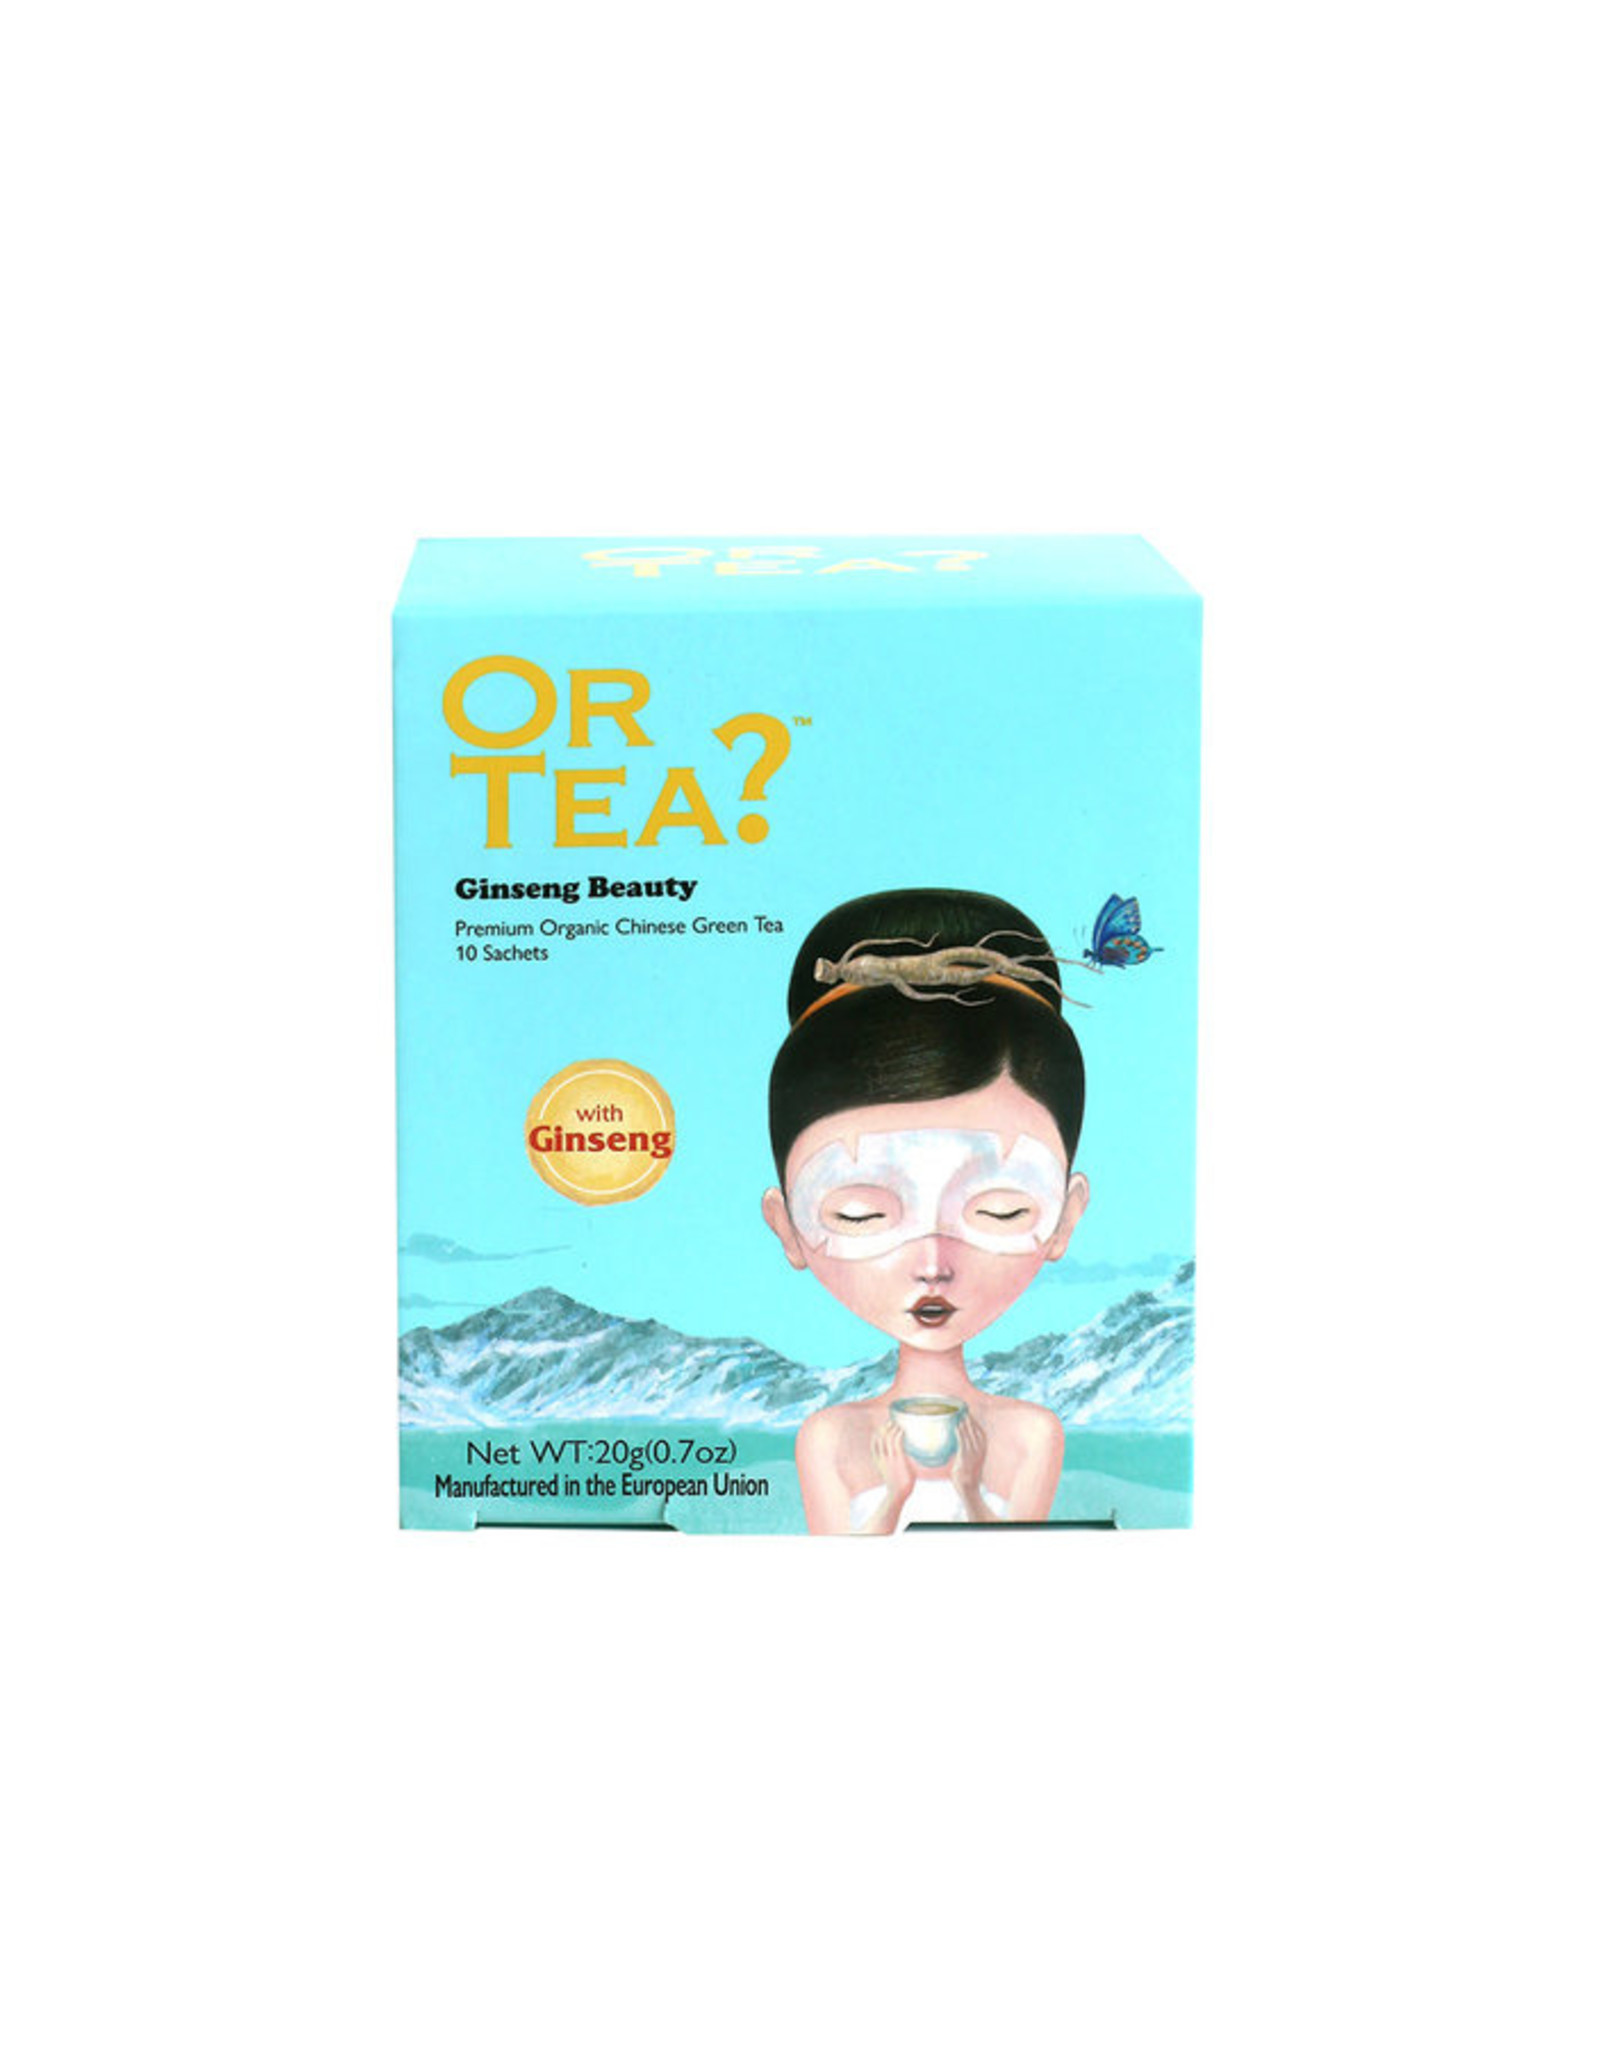 Or Tea? Organic Ginseng Beauty - 10-Sachet Box (Pillow)